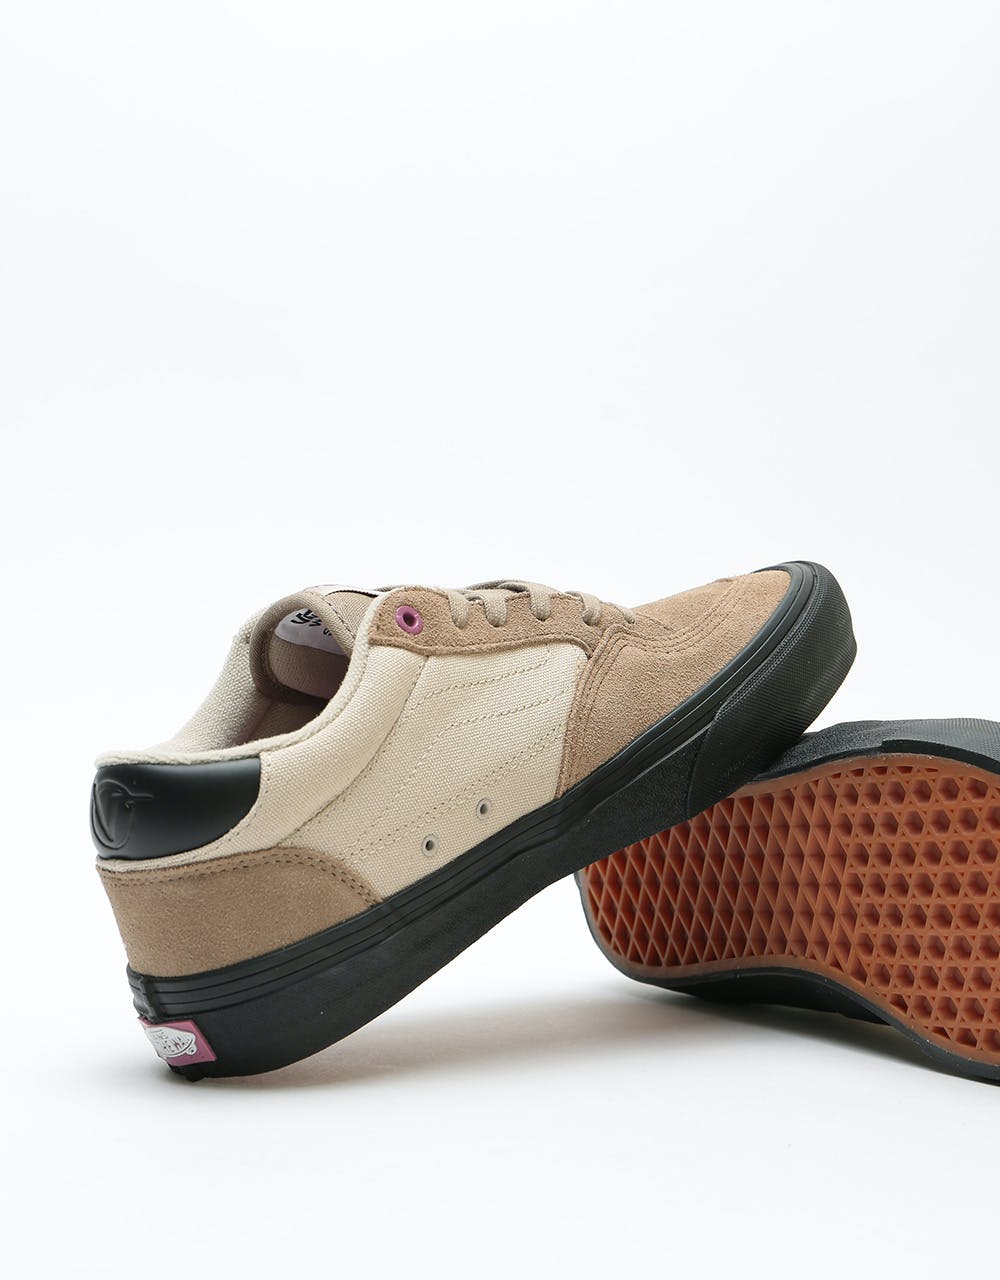 Vans Rowan Pro Skate Shoes - Desert Taupe/Black